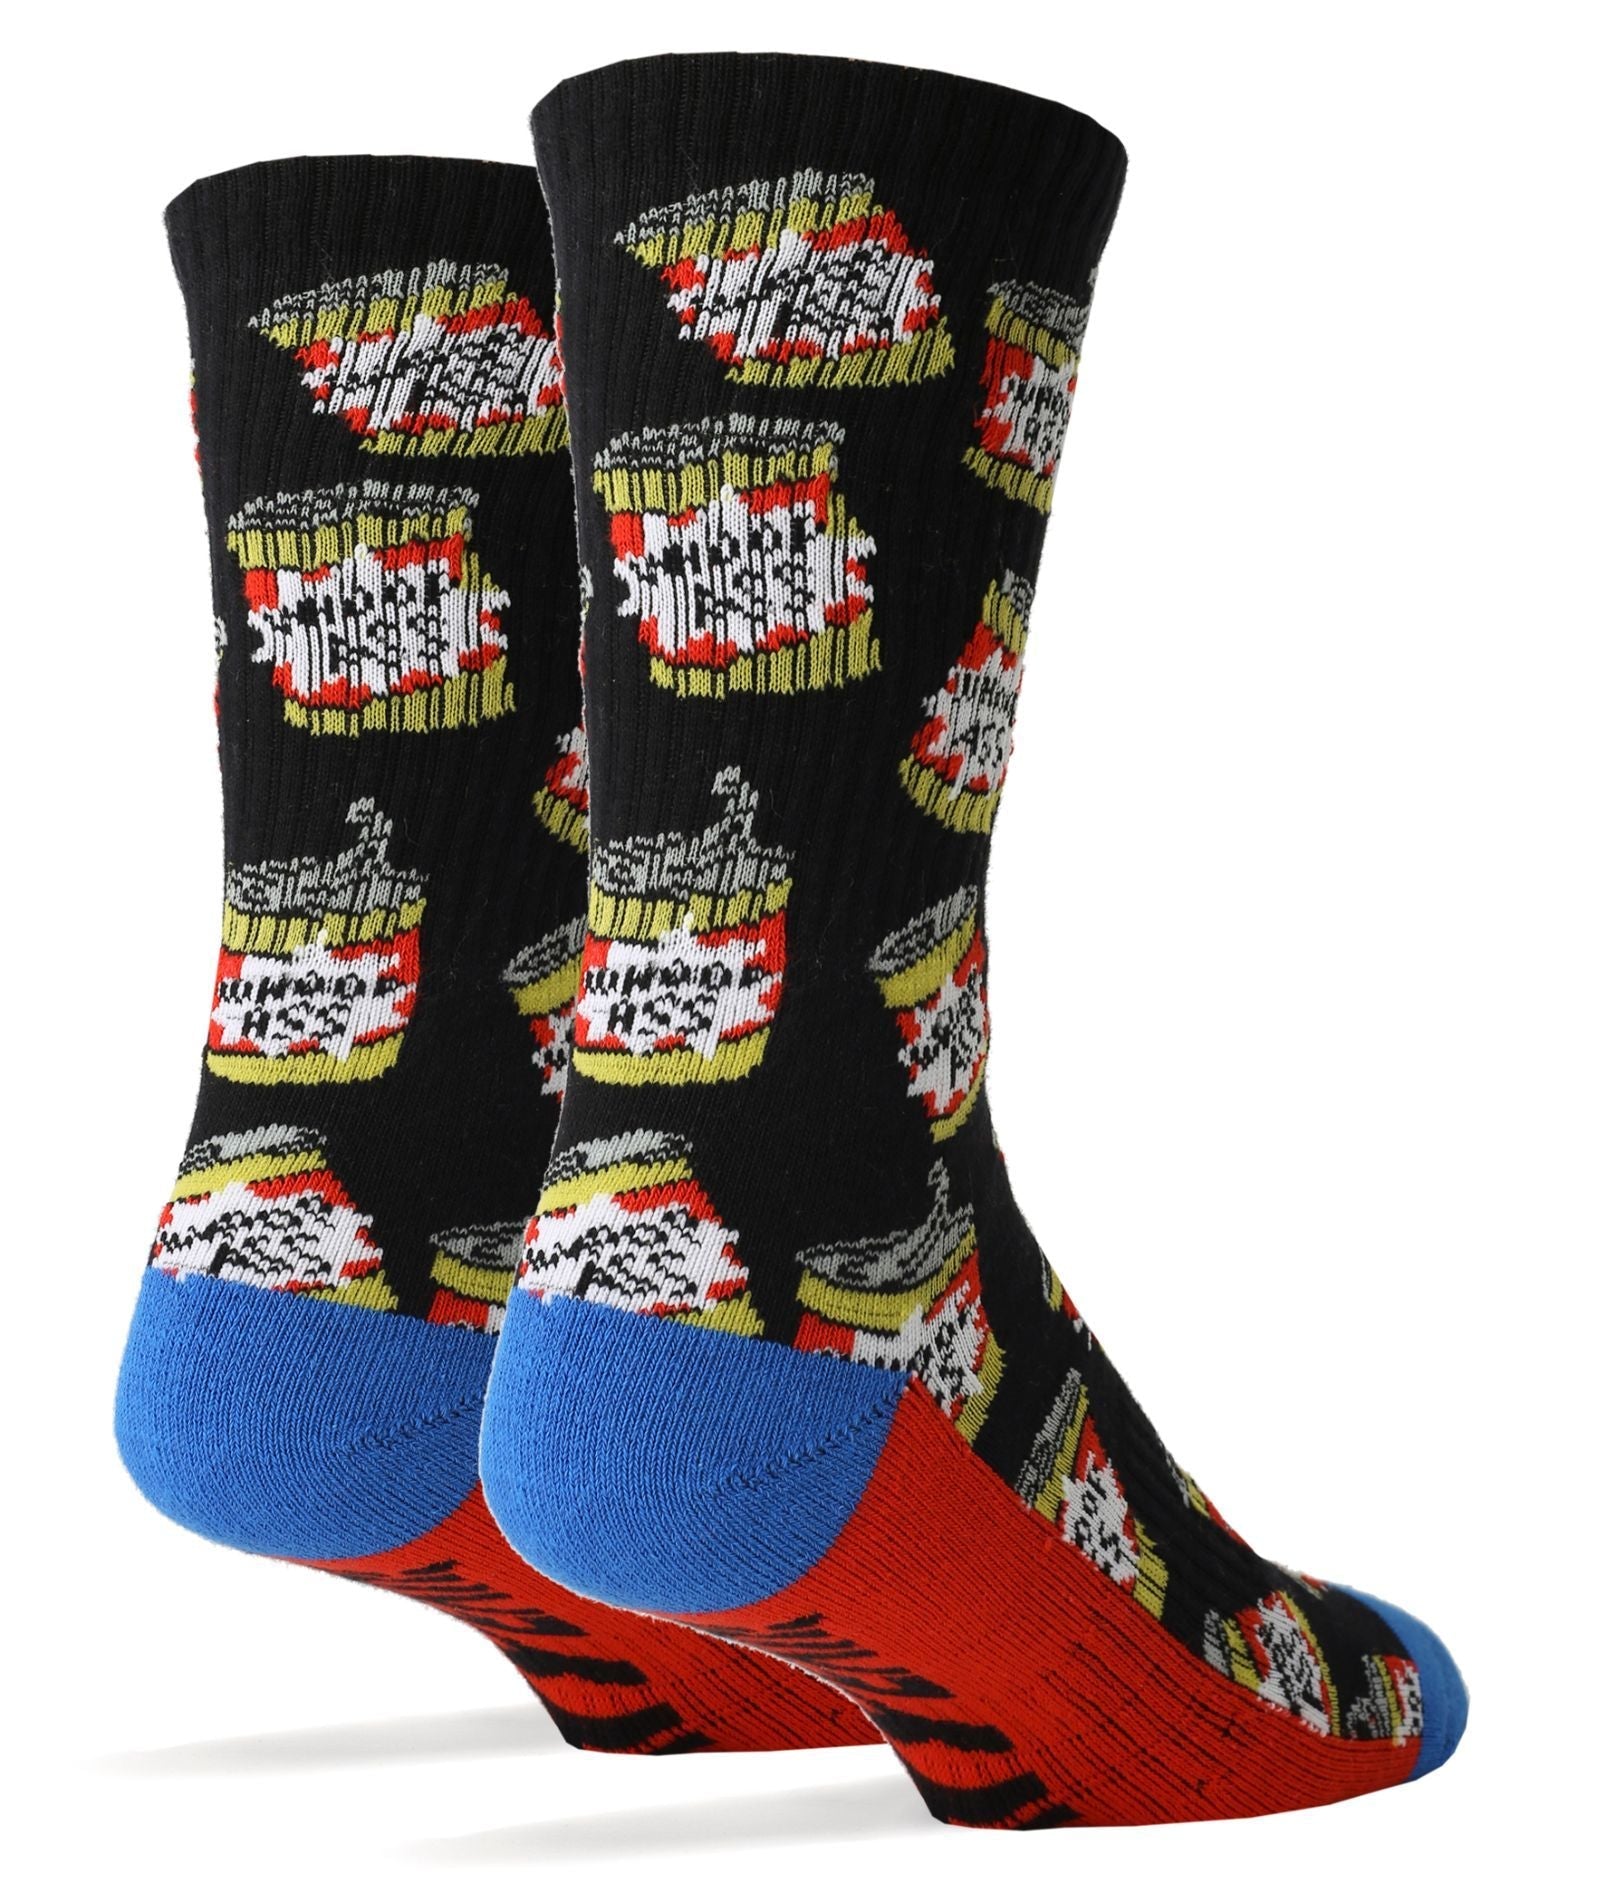 Men's Adult Humor Socks, Inappropriate Socks